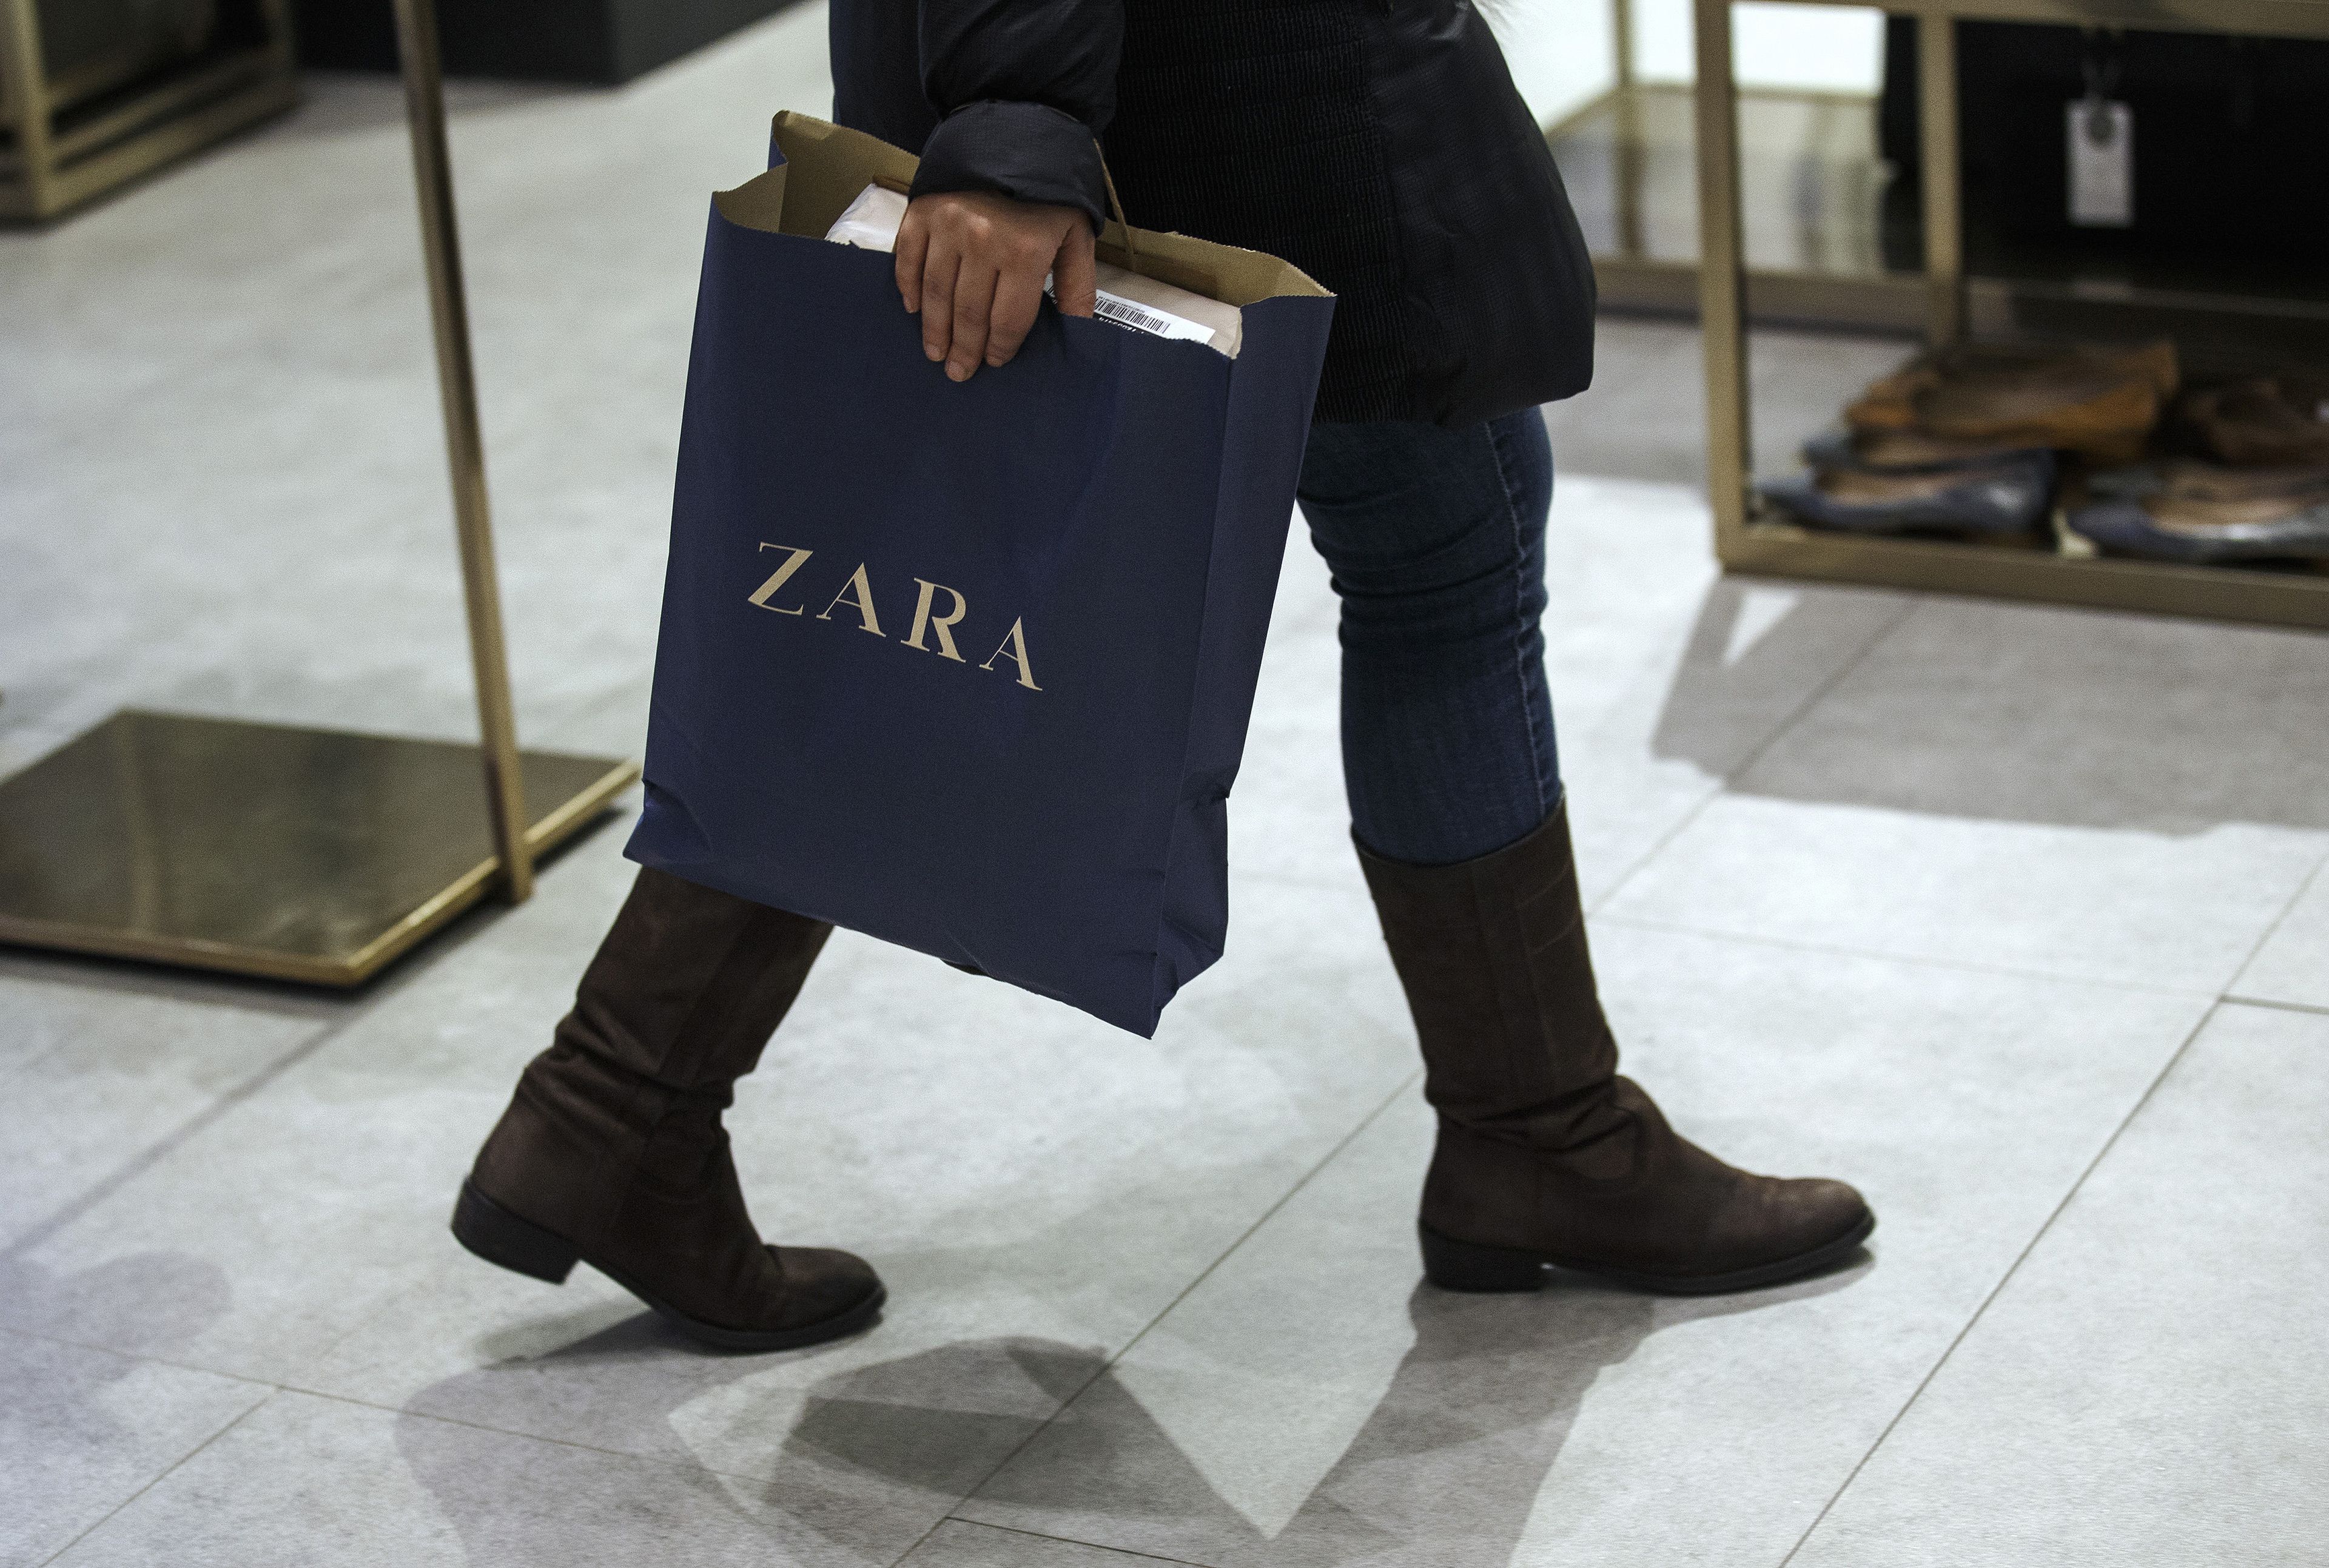 Bolsa de Zara